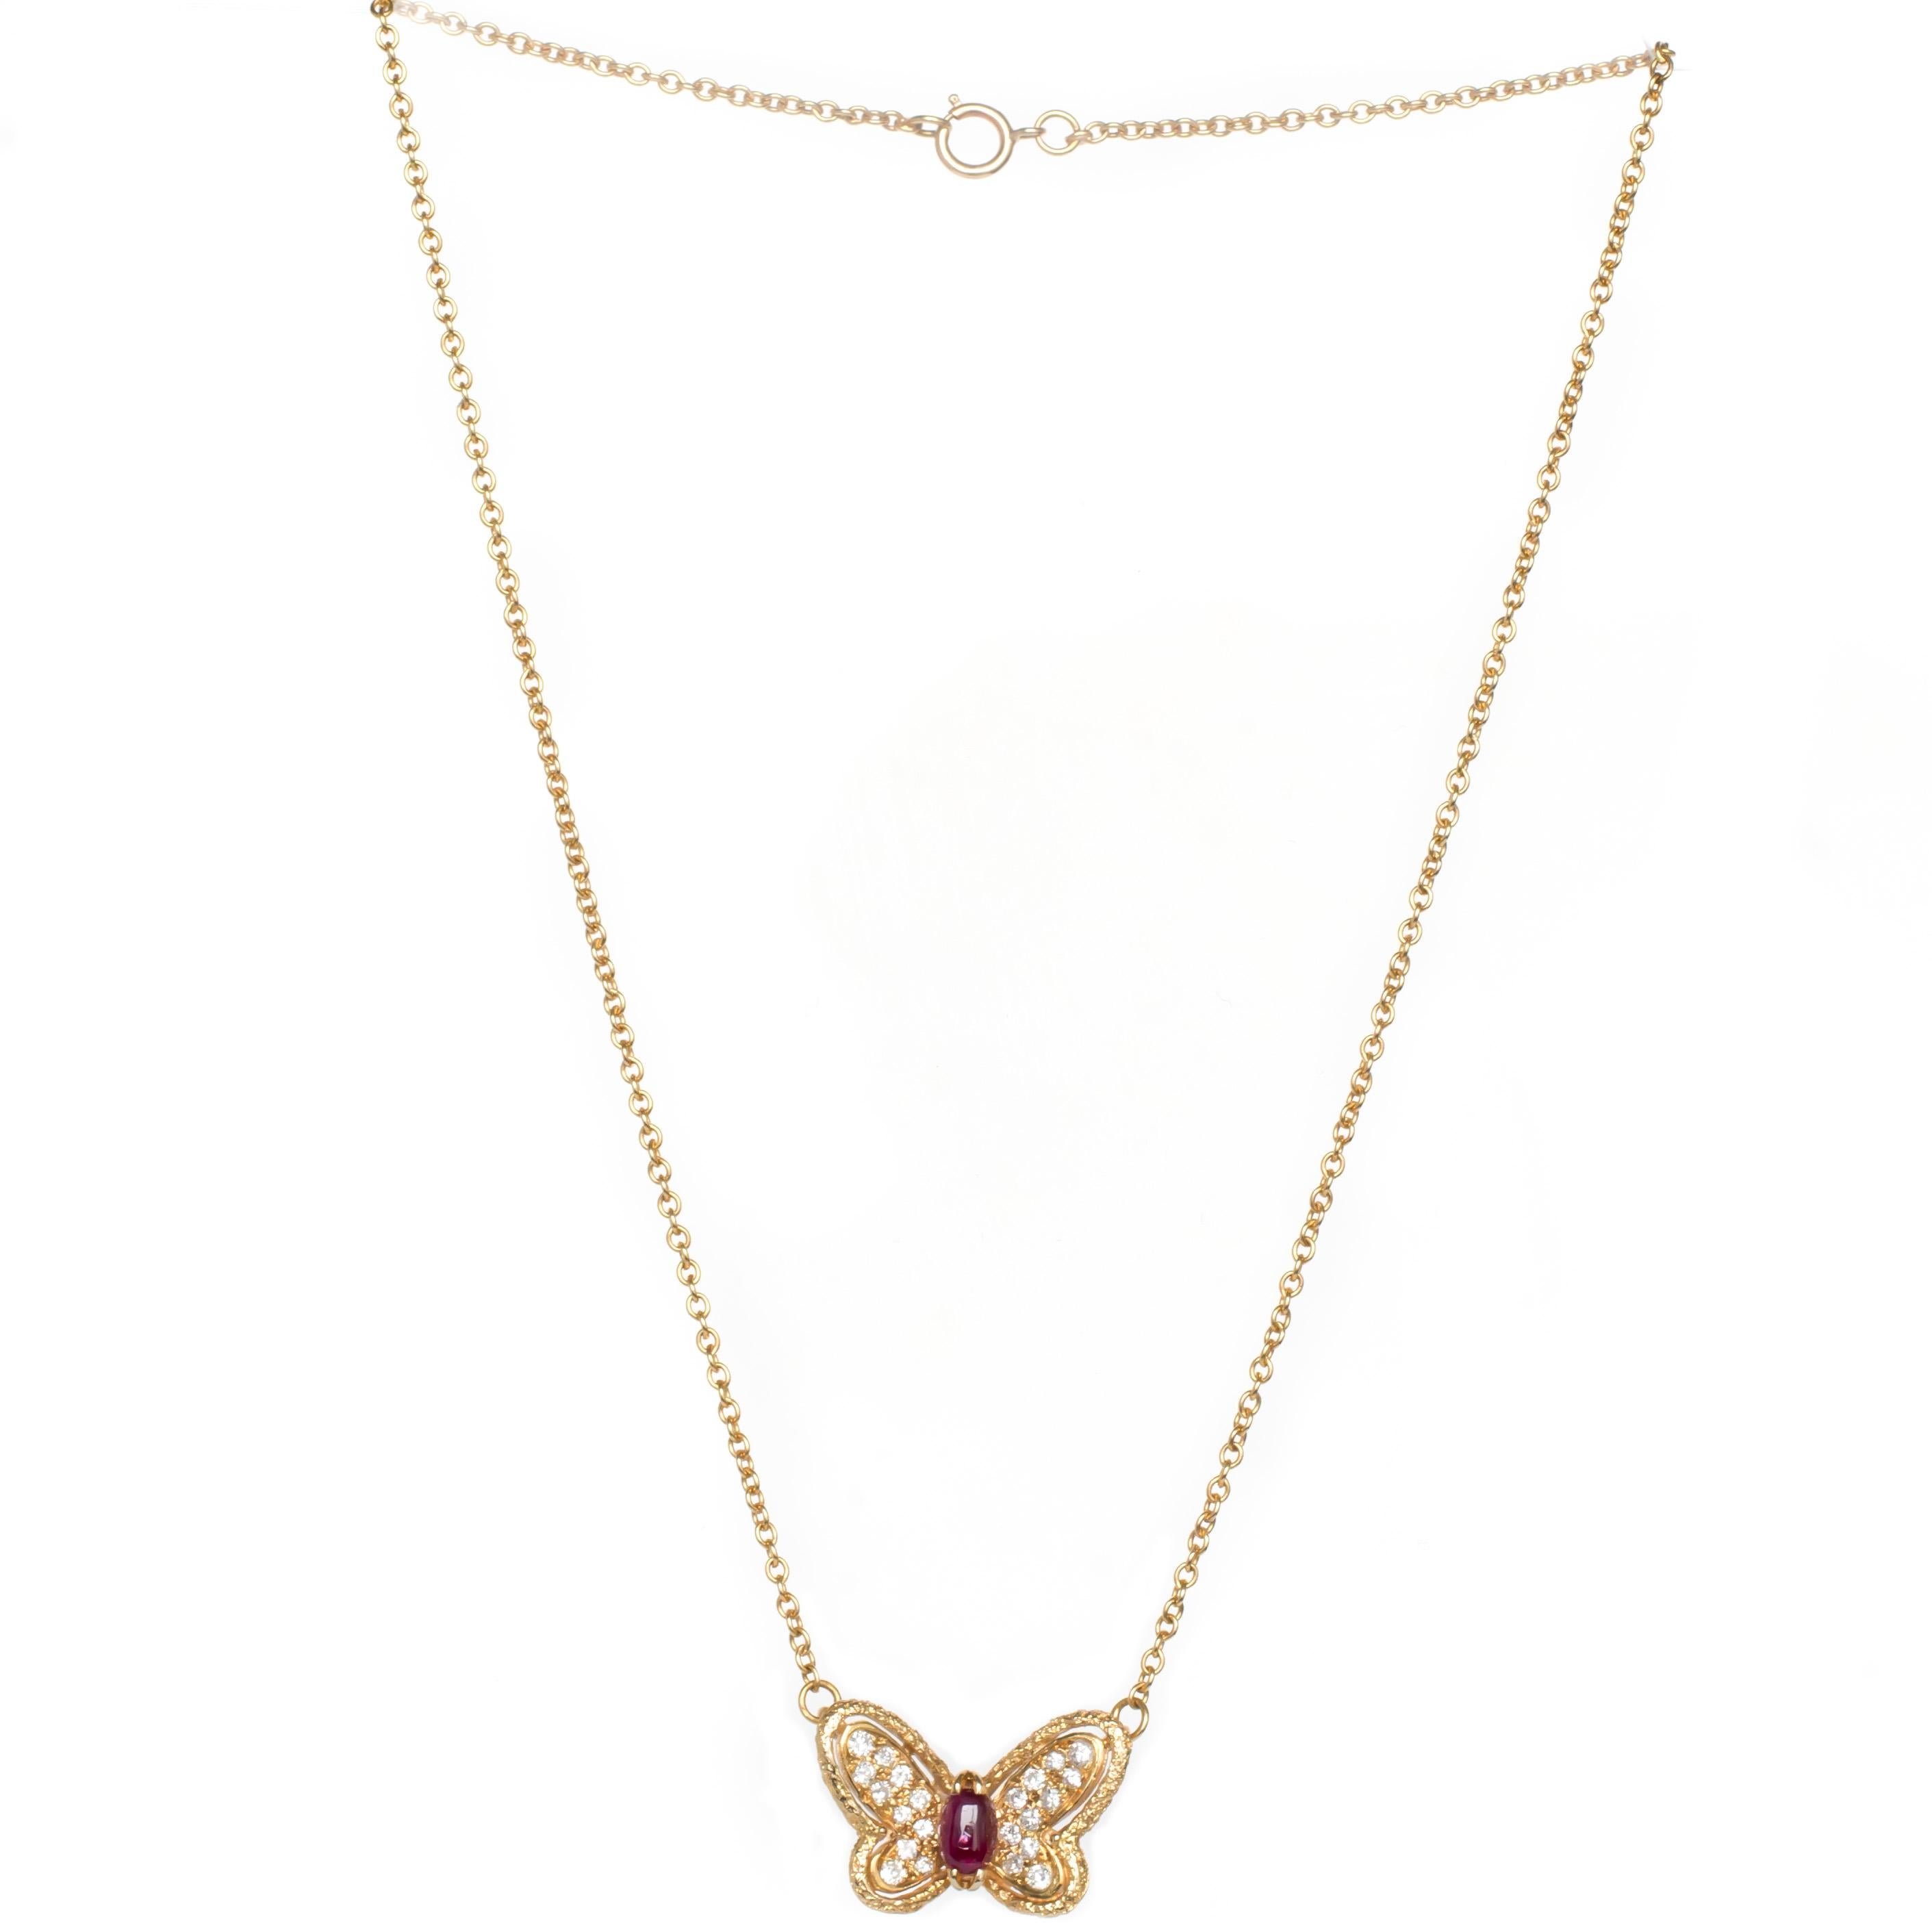 Van Cleef & Arpels .50 Carat Diamond Yellow Gold Necklace